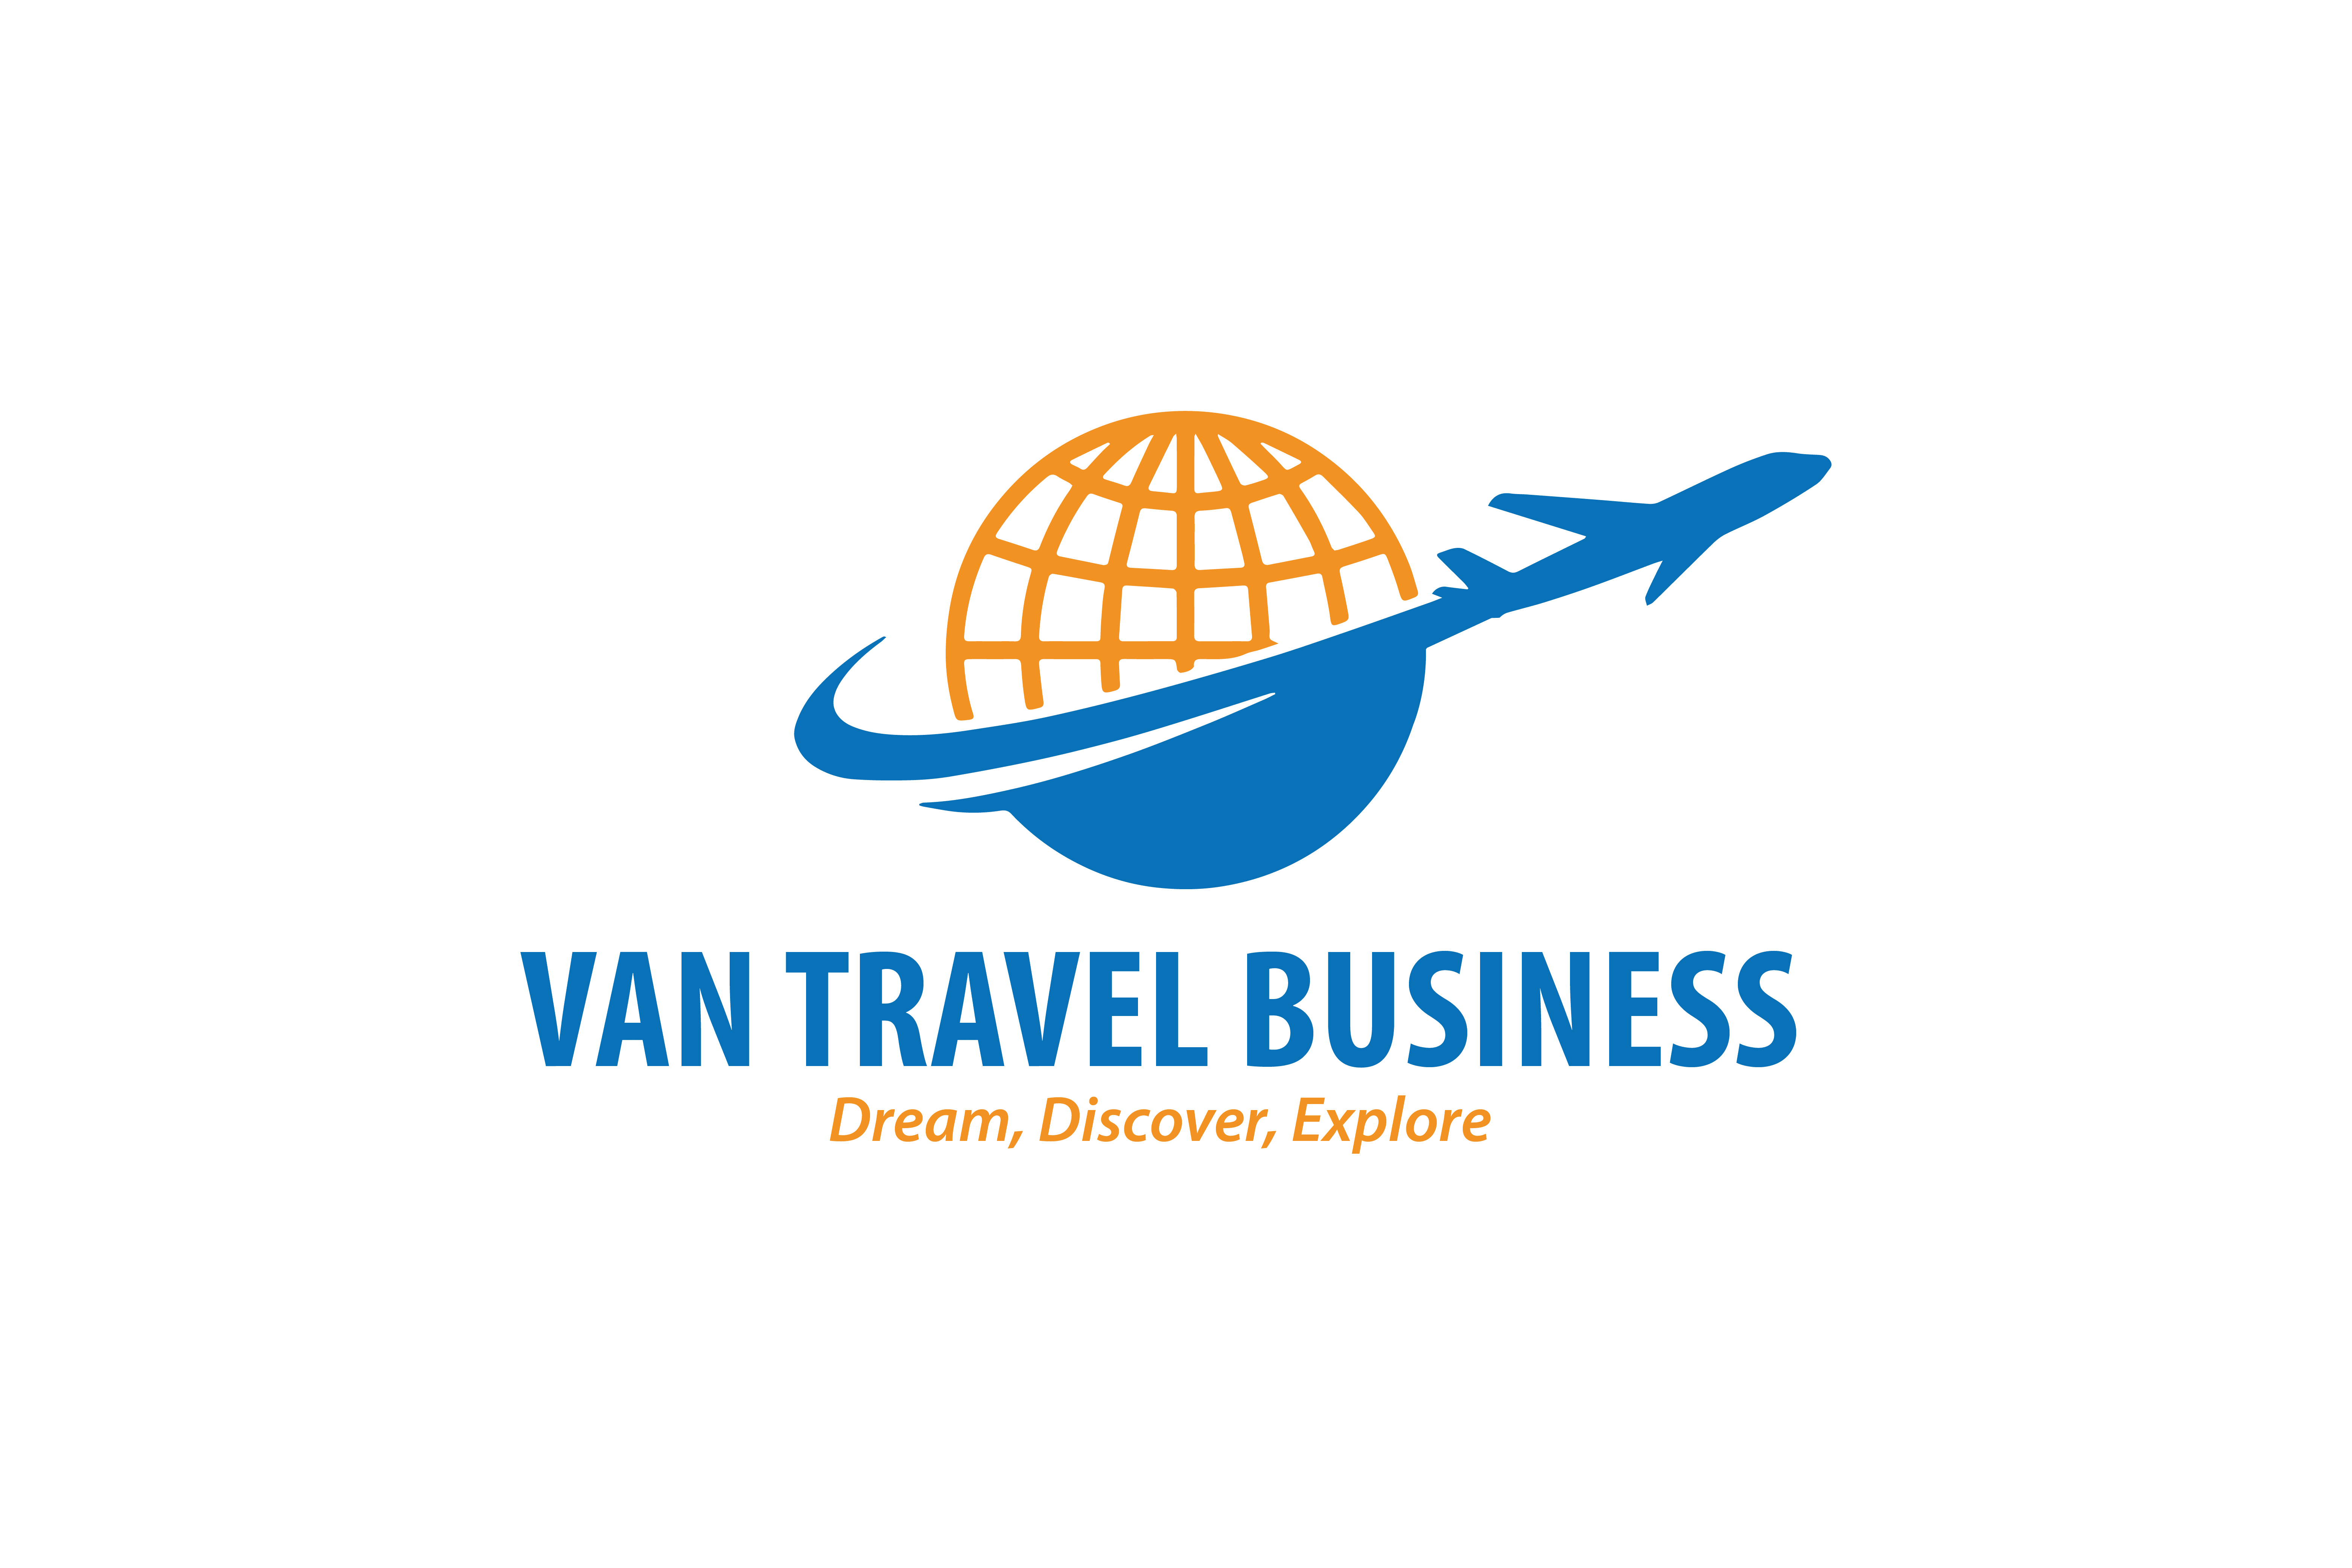 Van Travel Business